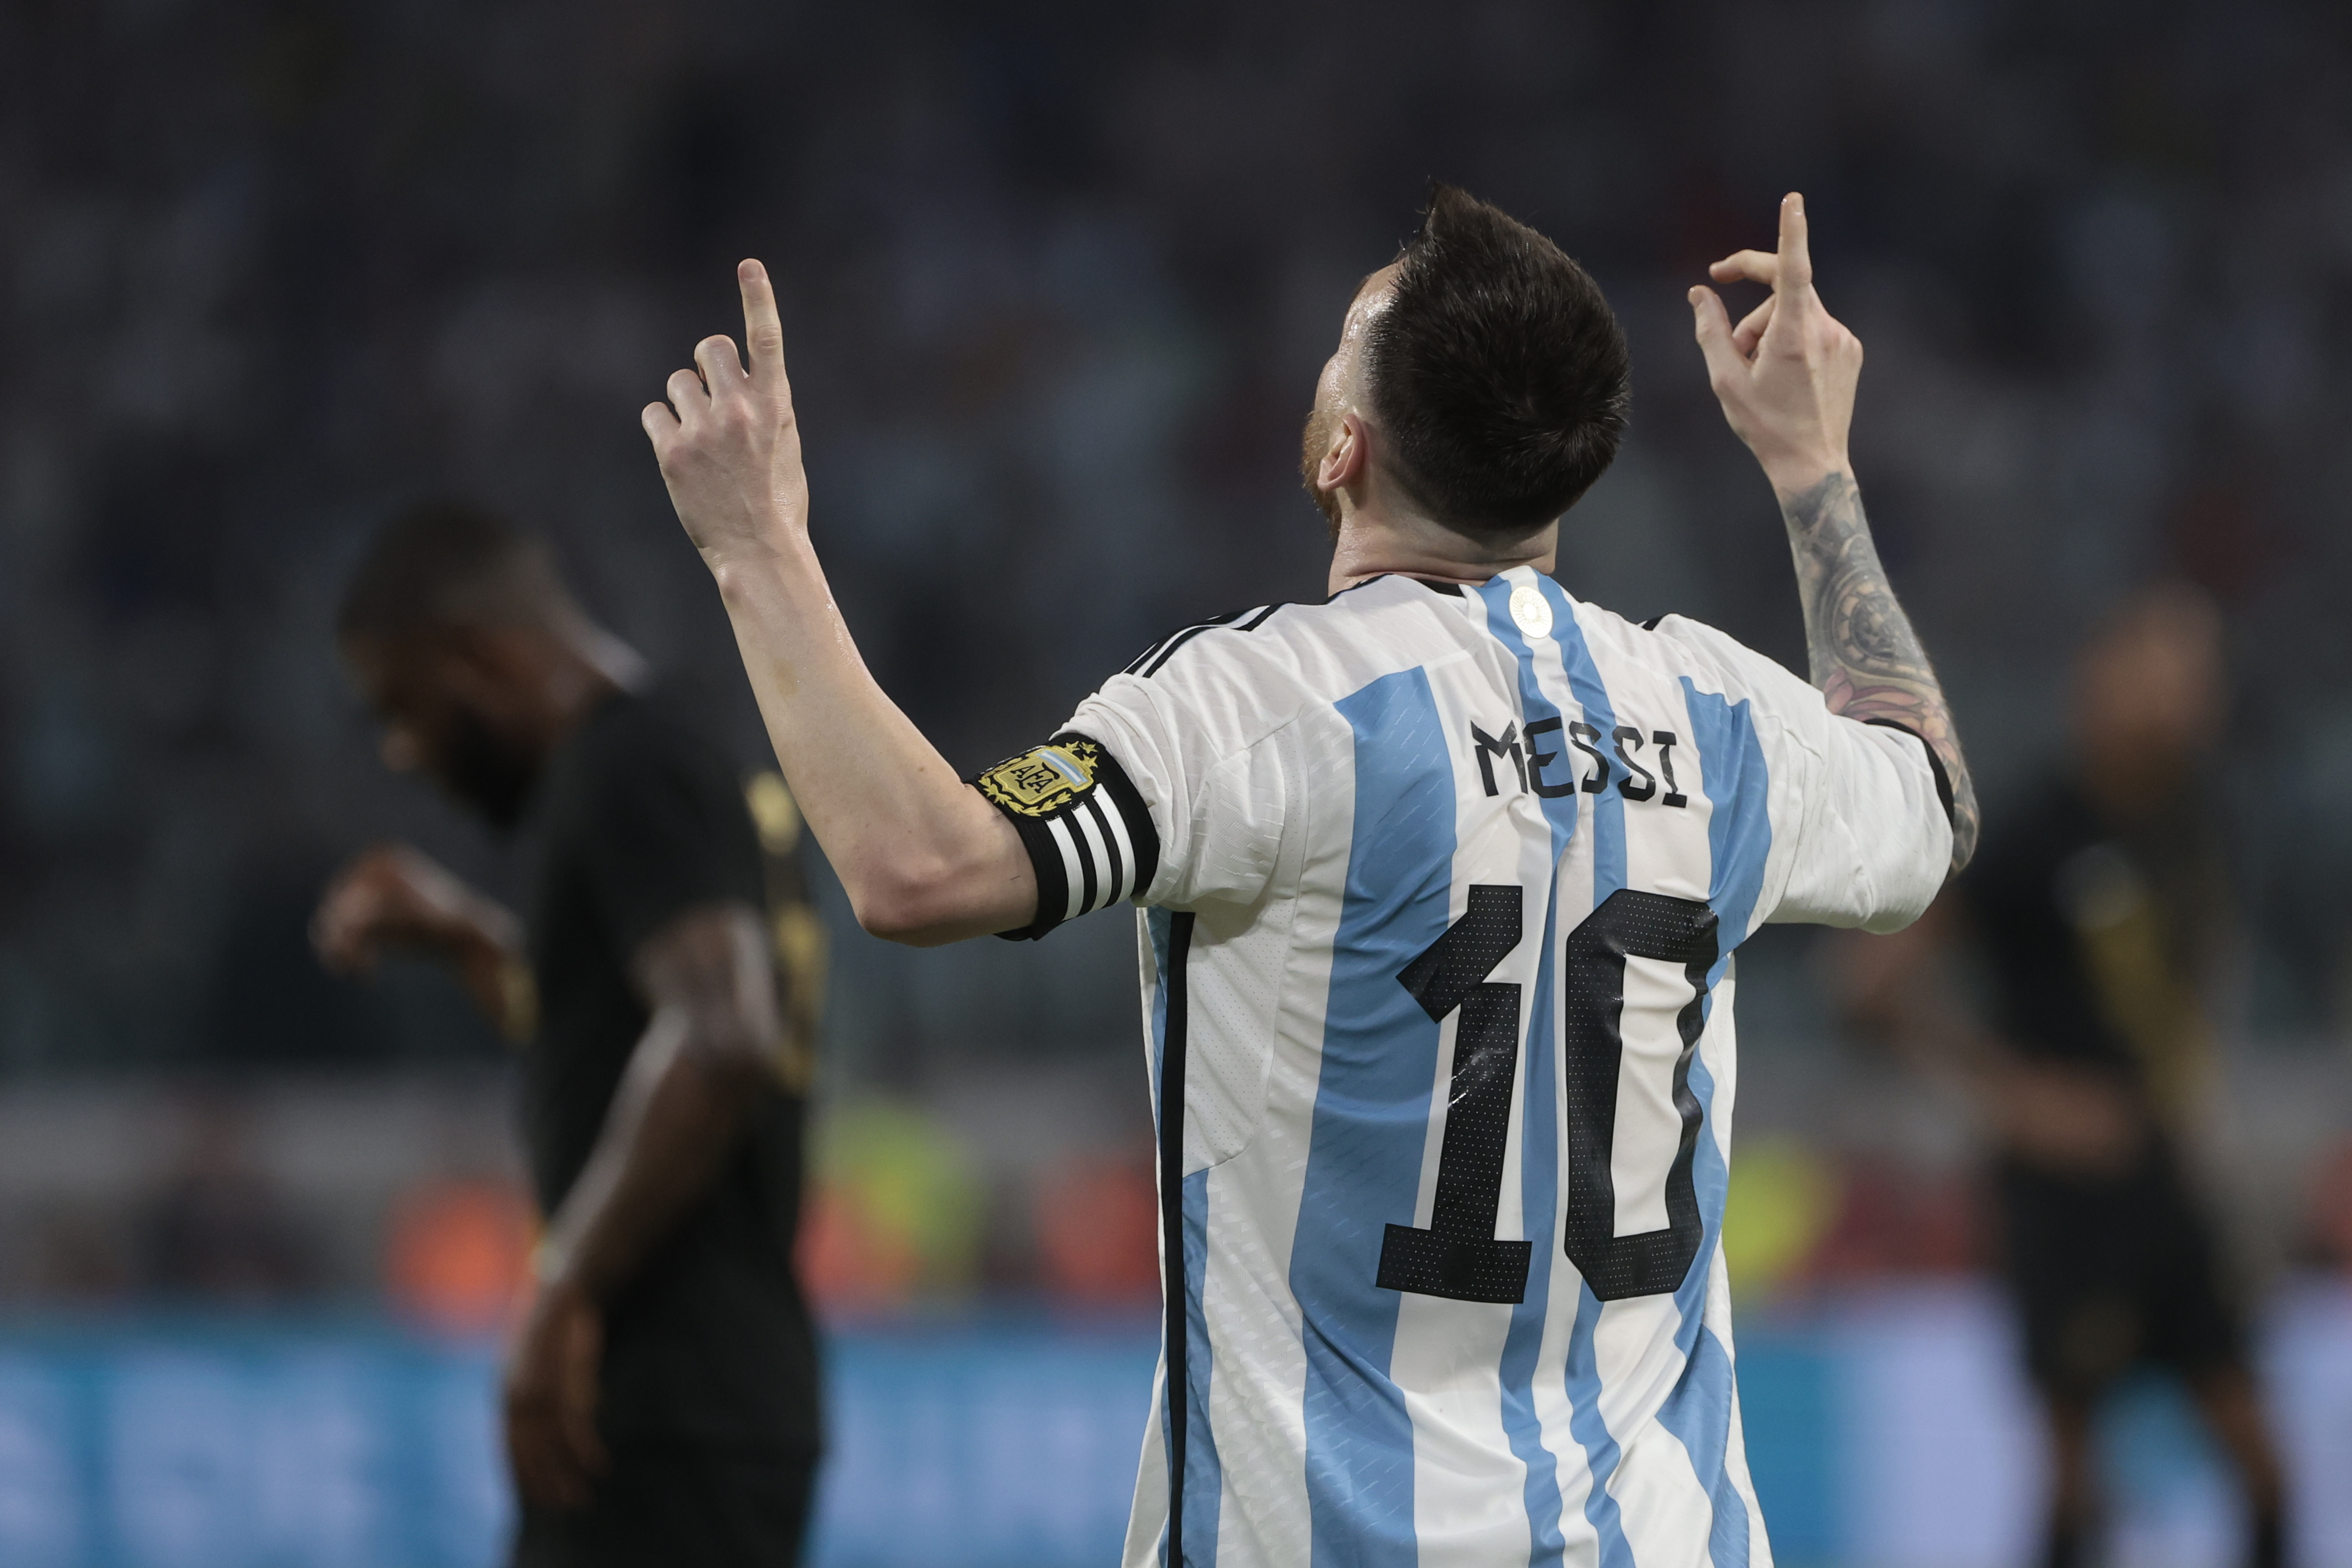 El 1x1 de Argentina: Messi iluminó la noche santiagueña